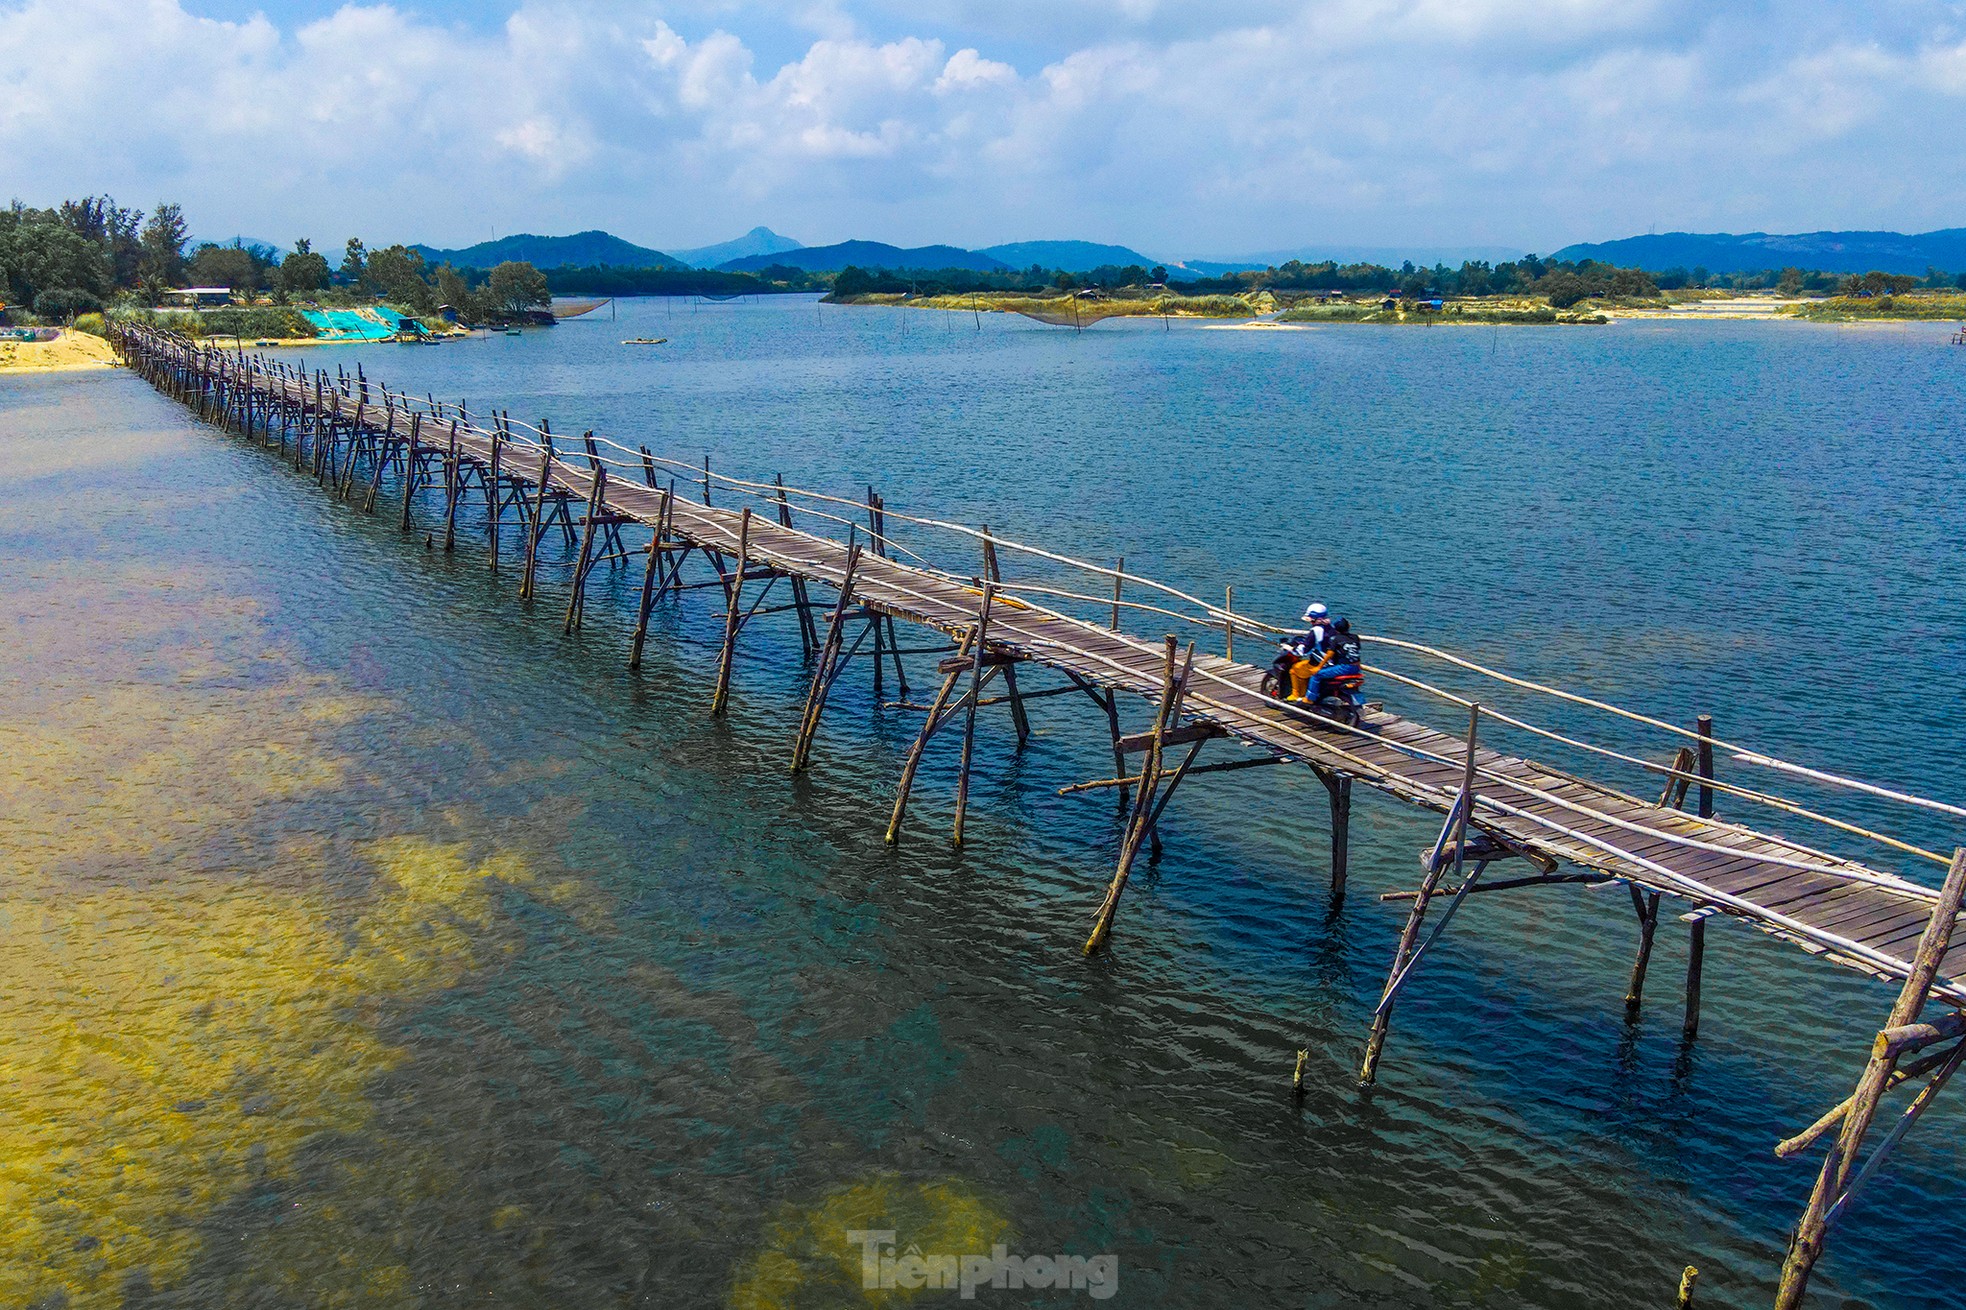 Admirar el puente de madera típico en provincia vietnamita